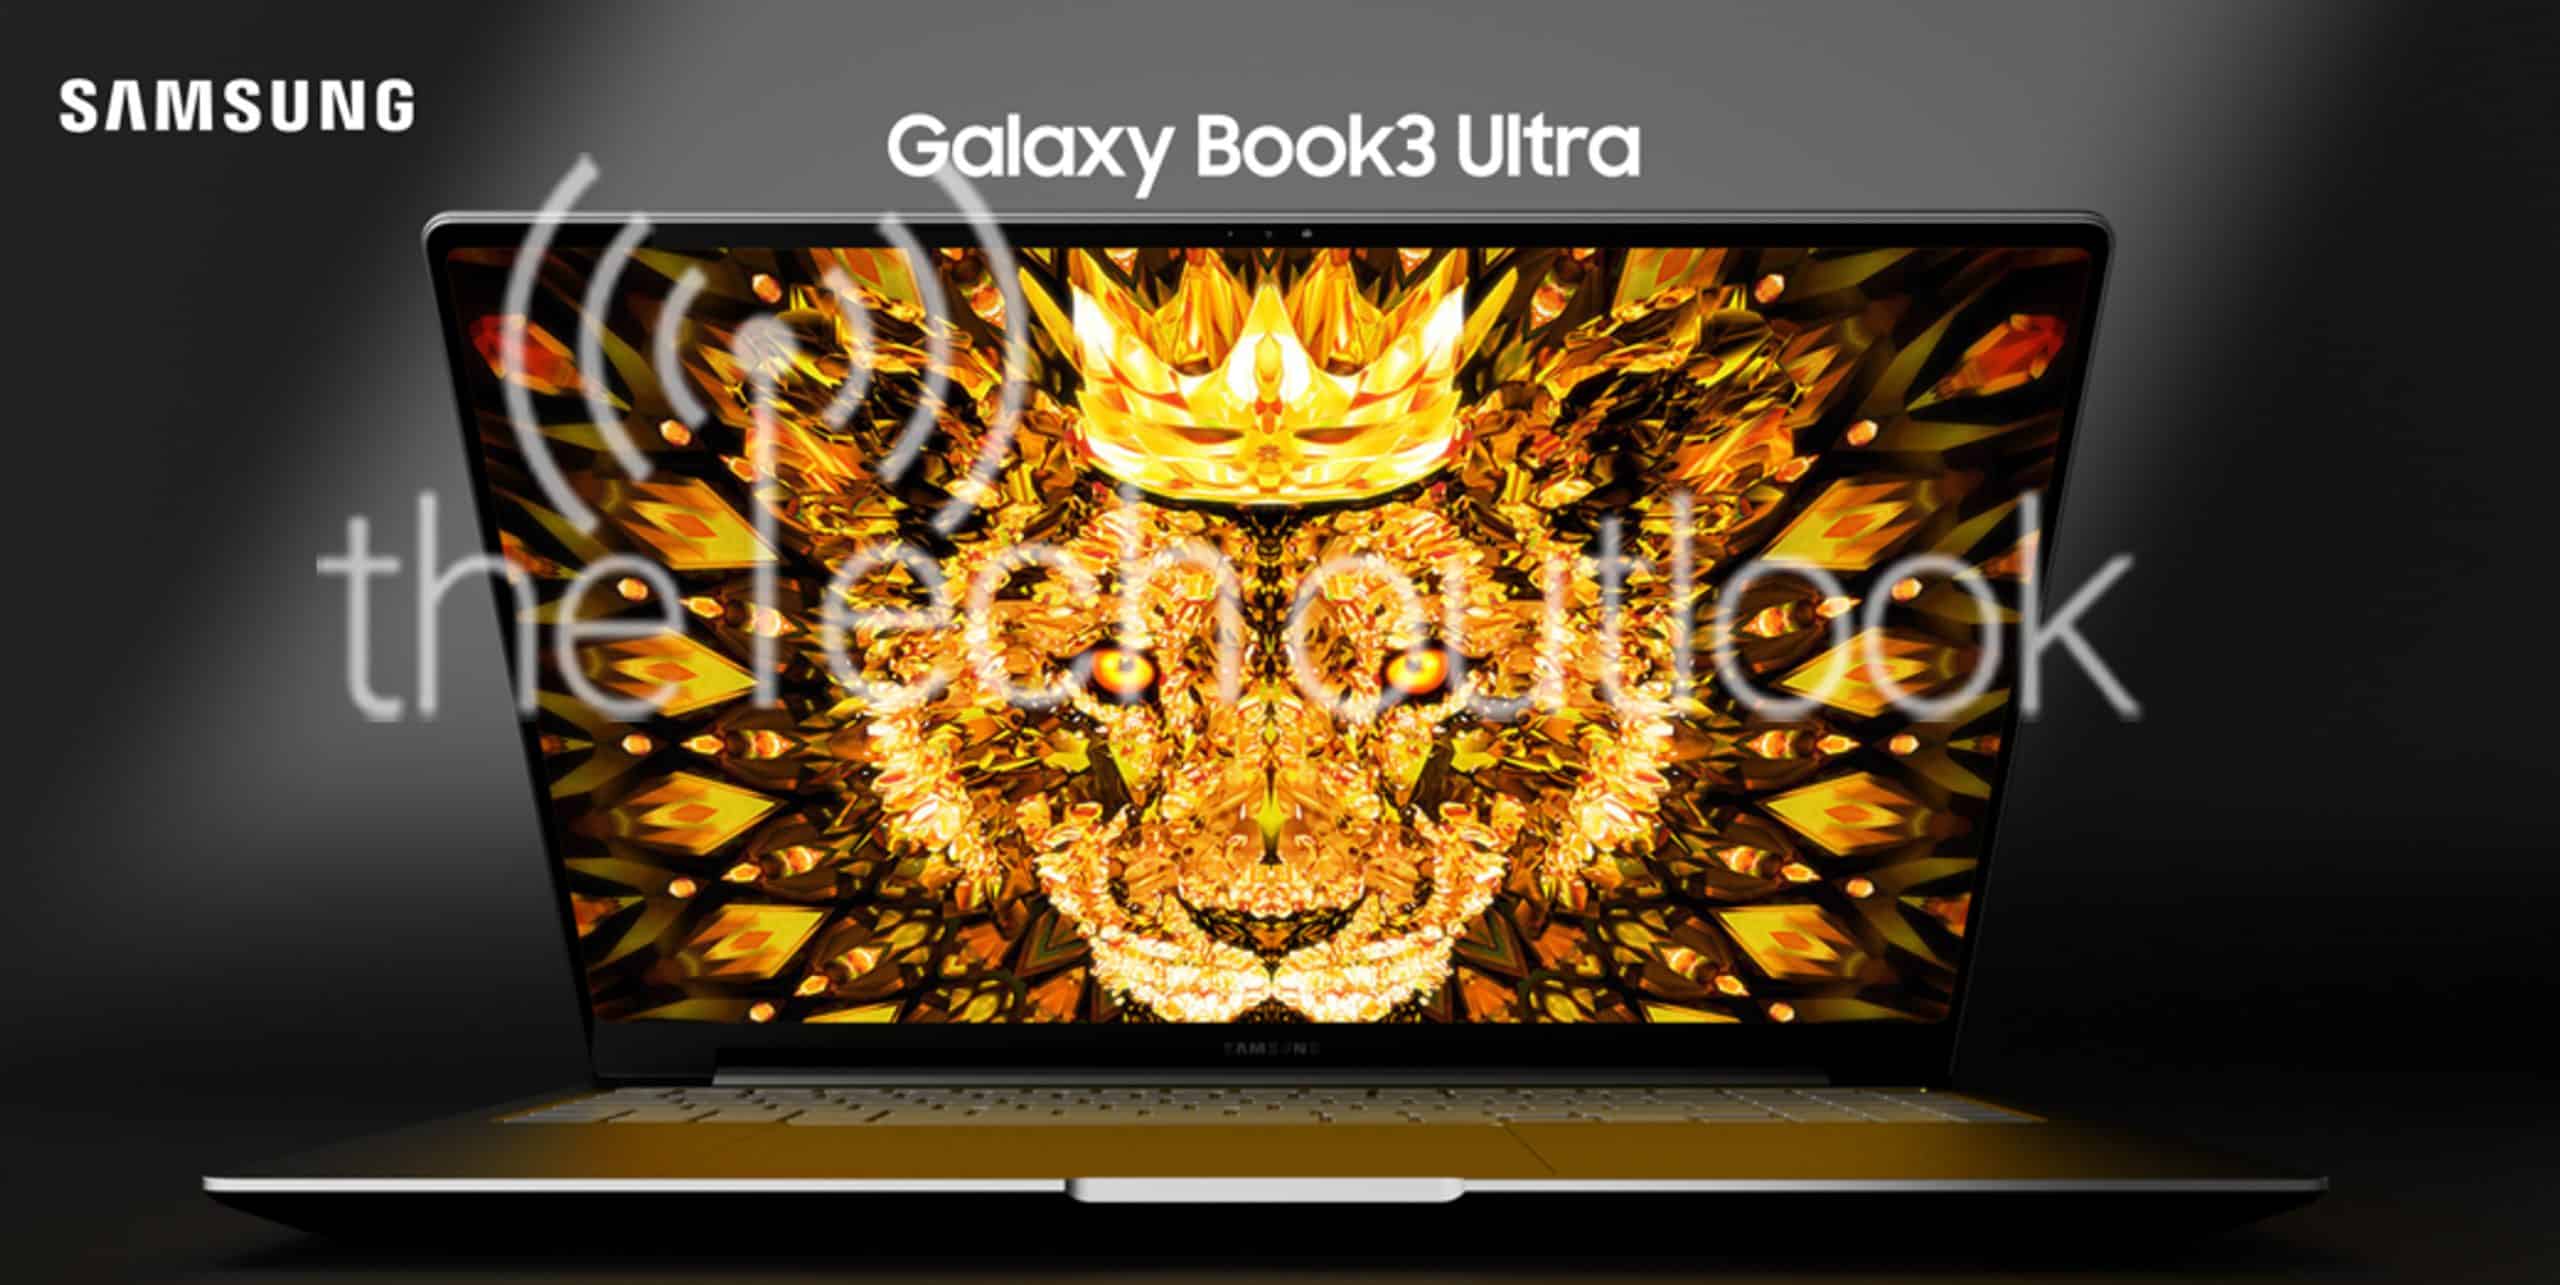 Galaxy Book 3 Ultra kullanıcılara neler sunacak?